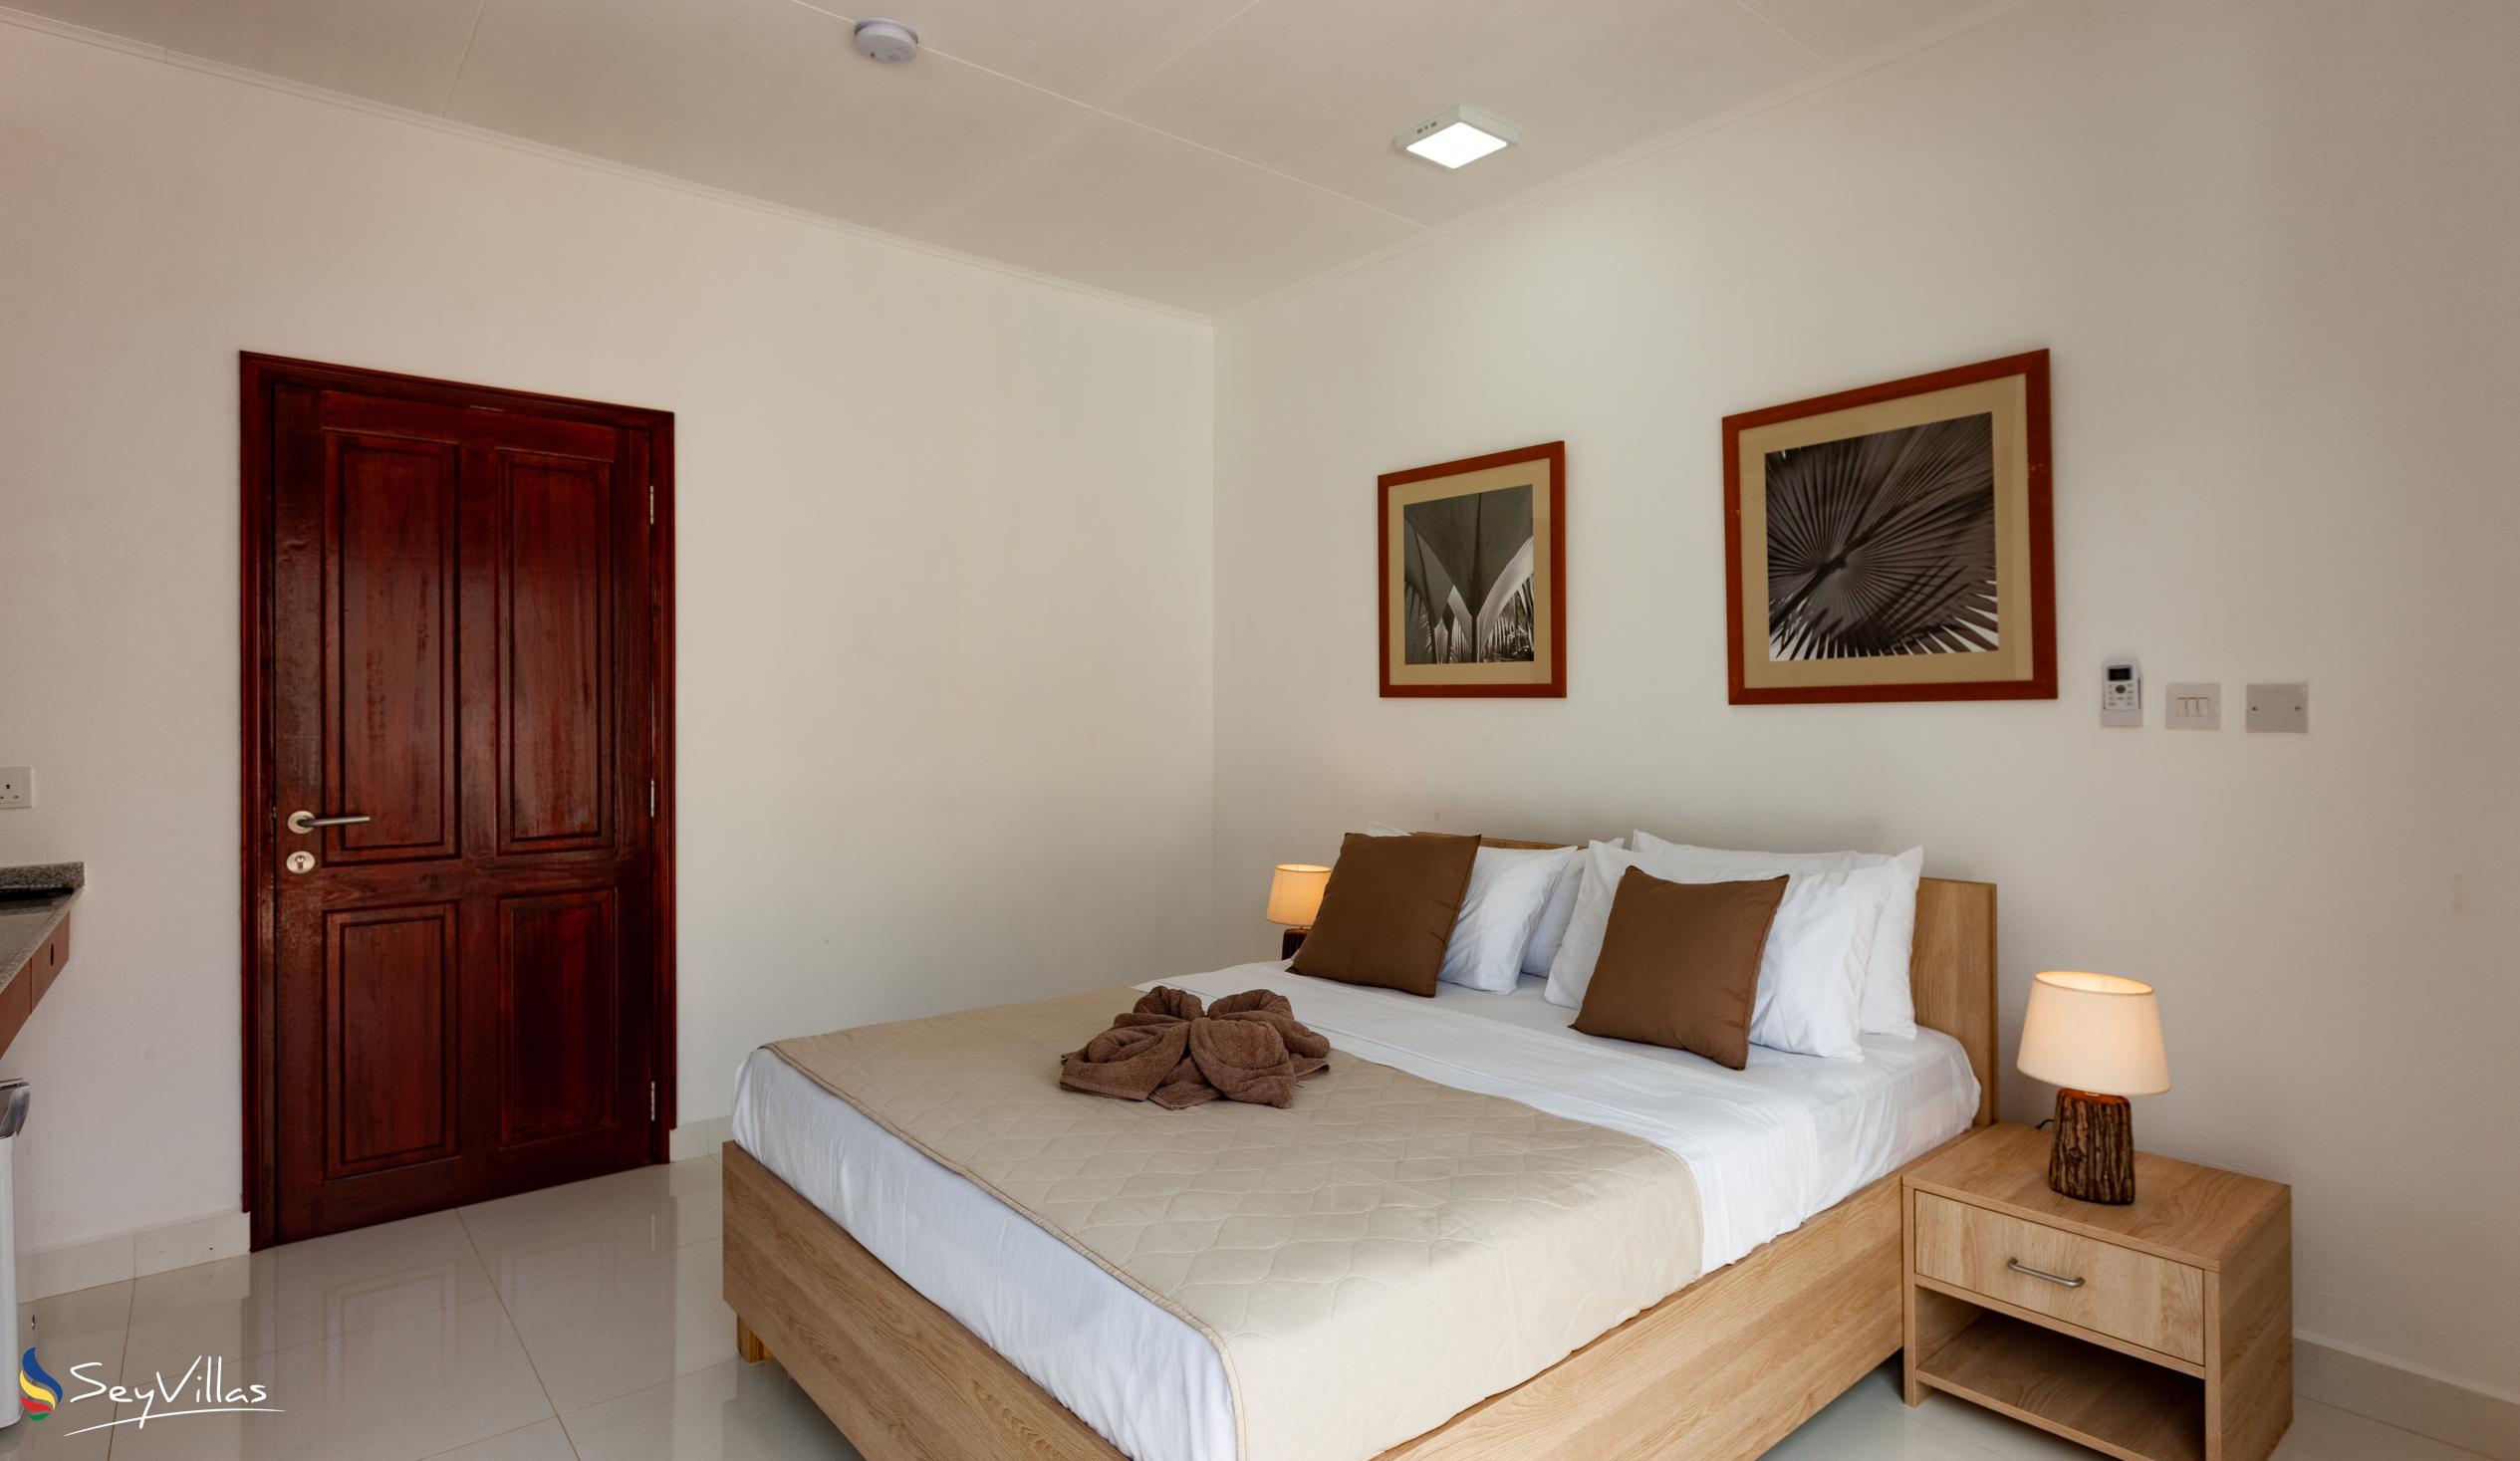 Foto 28: Hotel Plein Soleil - Deluxe Zimmer mit Queensize-Bett - Praslin (Seychellen)